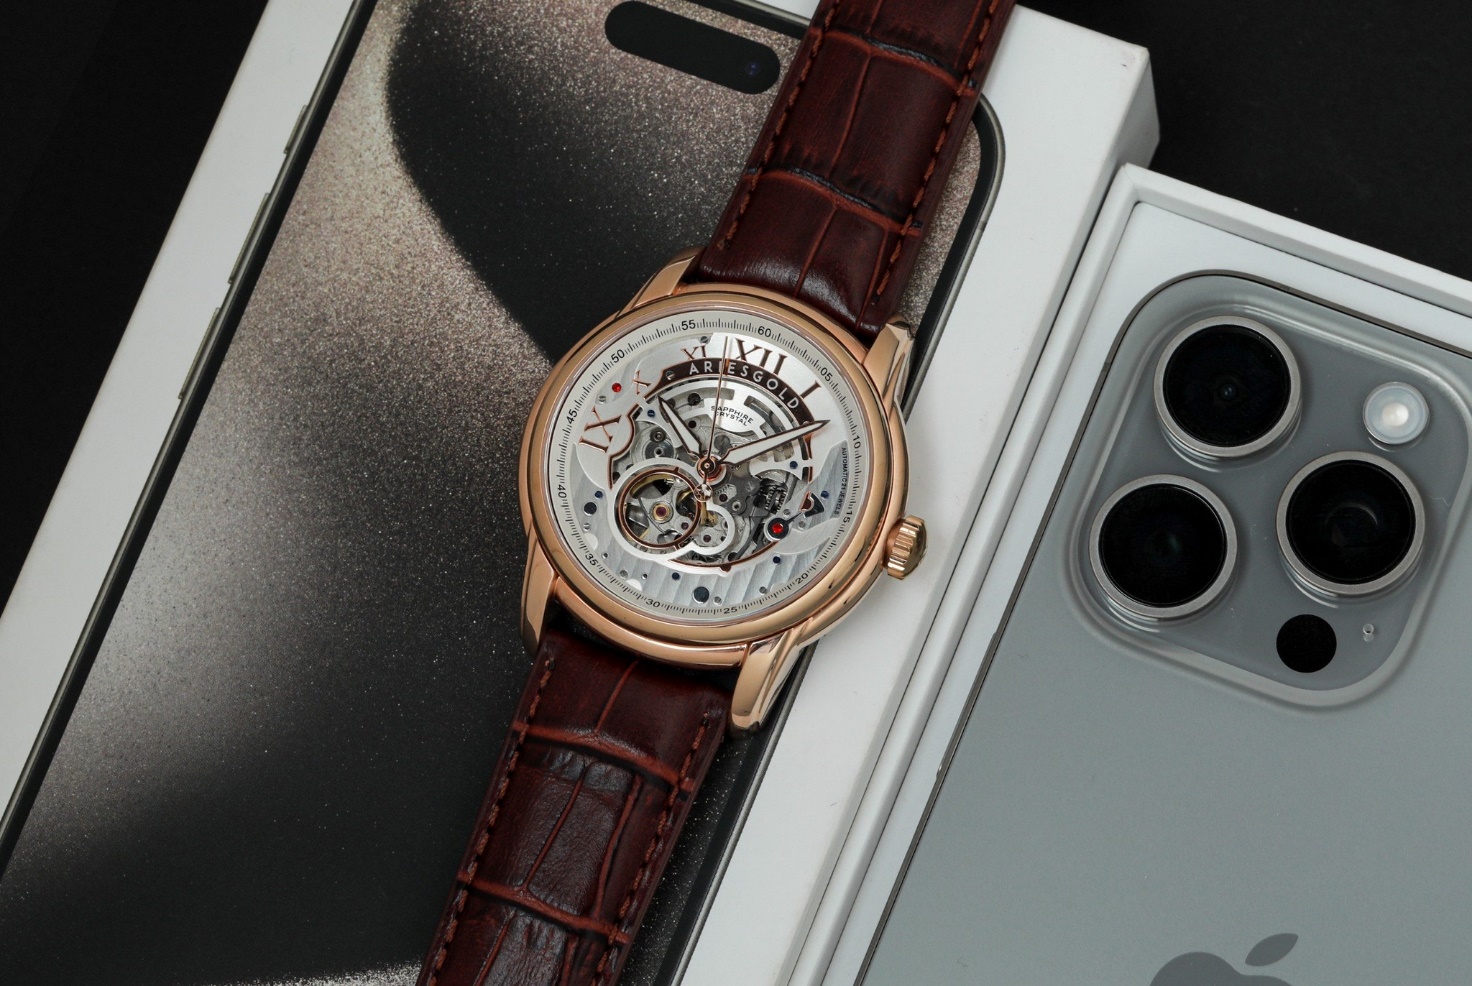 Dành tặng iPhone cho khách hàng và giảm đến 40% khi mua đồng hồ tại Đăng Quang Watch - Ảnh 3.